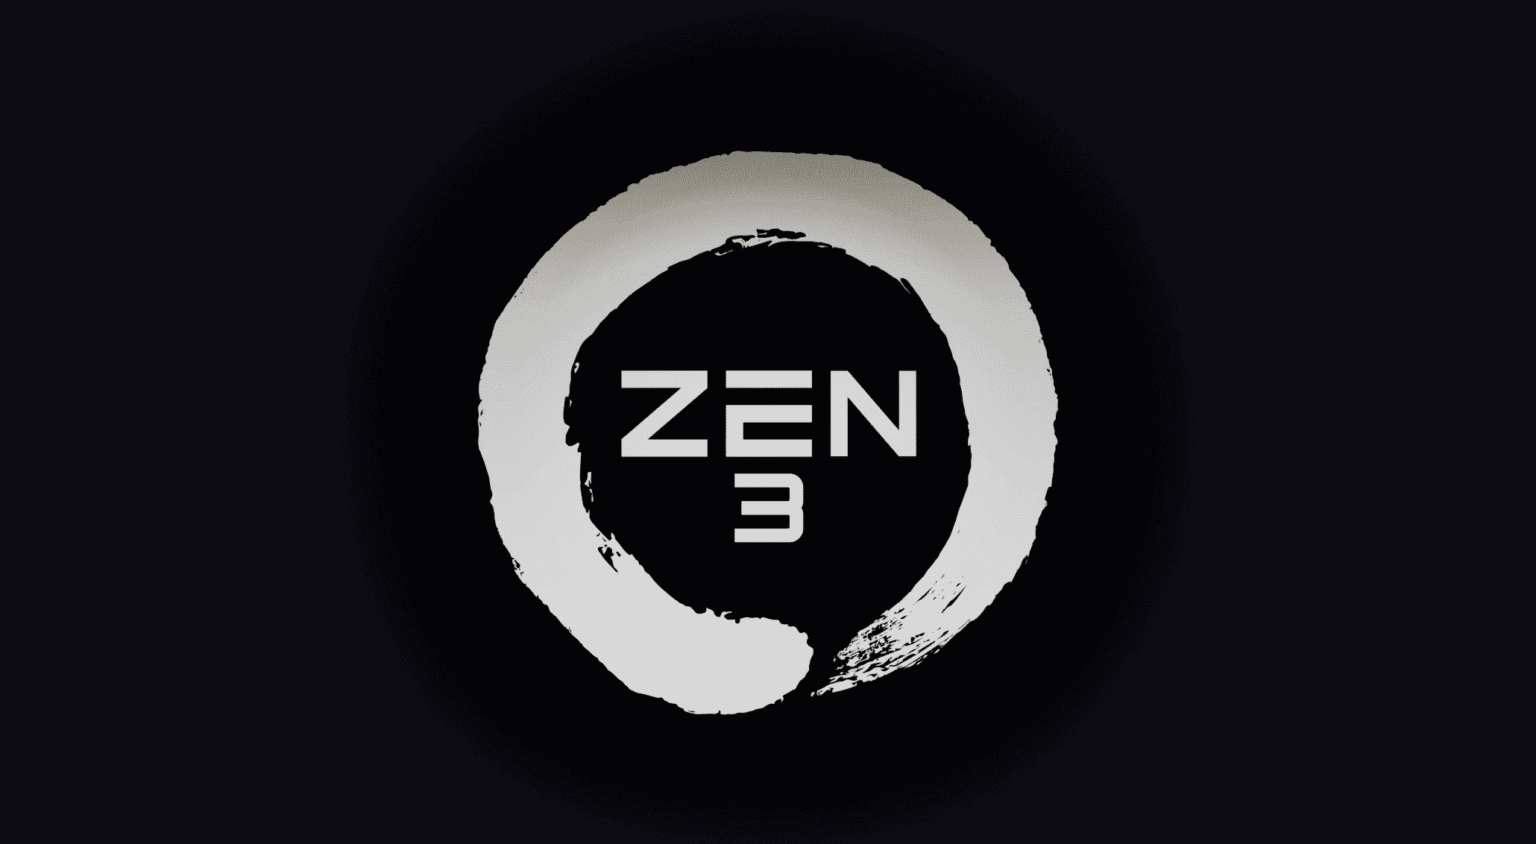 zen 3 ram speeds